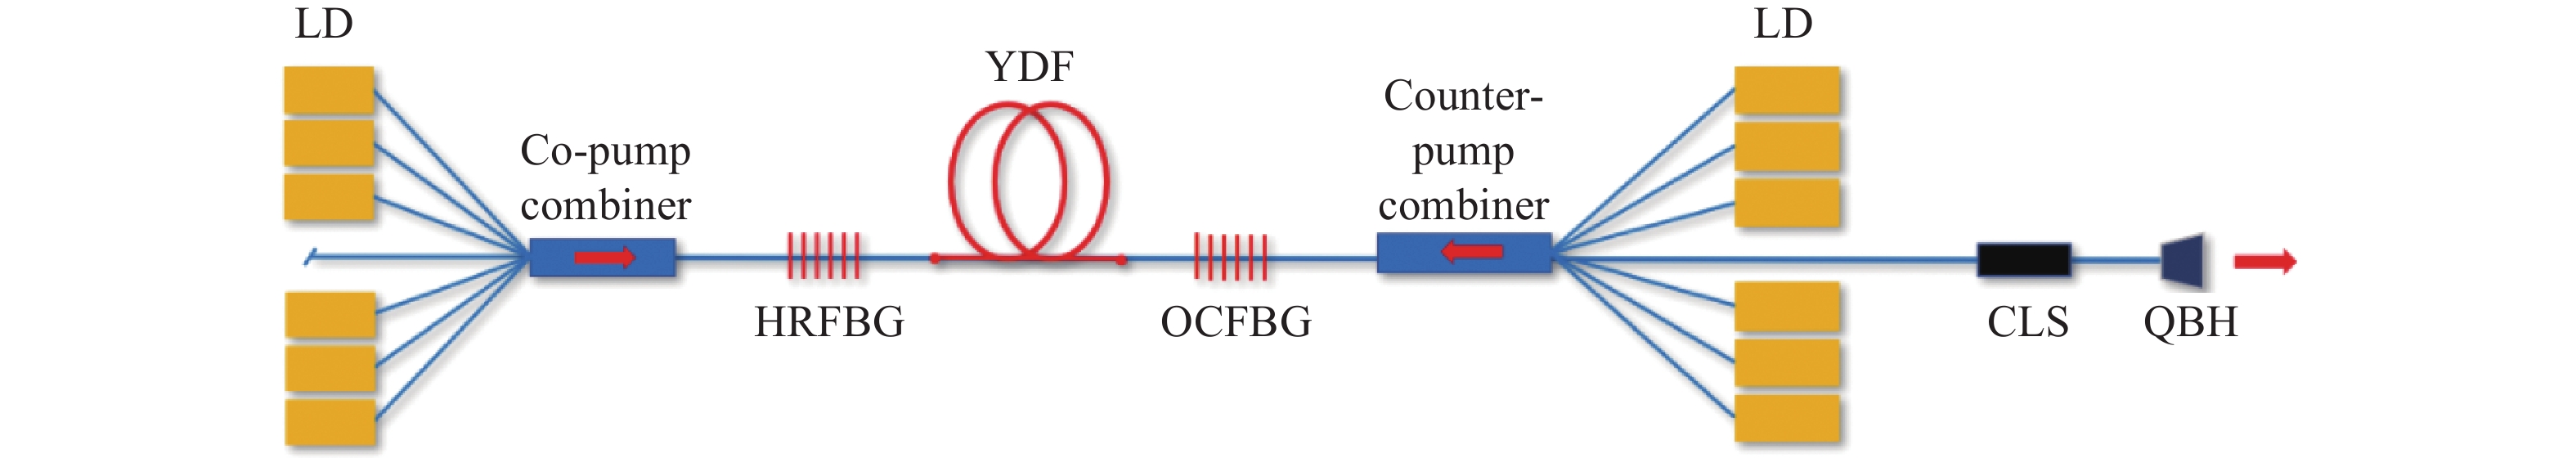 Schematic diagram of fiber oscillator structure (LD: Laser diode, HRFBG: High reflector FBG, YDF: Ytterbium-doped fiber, OCFBG: Output-coupler FBG, CLS: Cladding light stripper, QBH: Quartz block head)